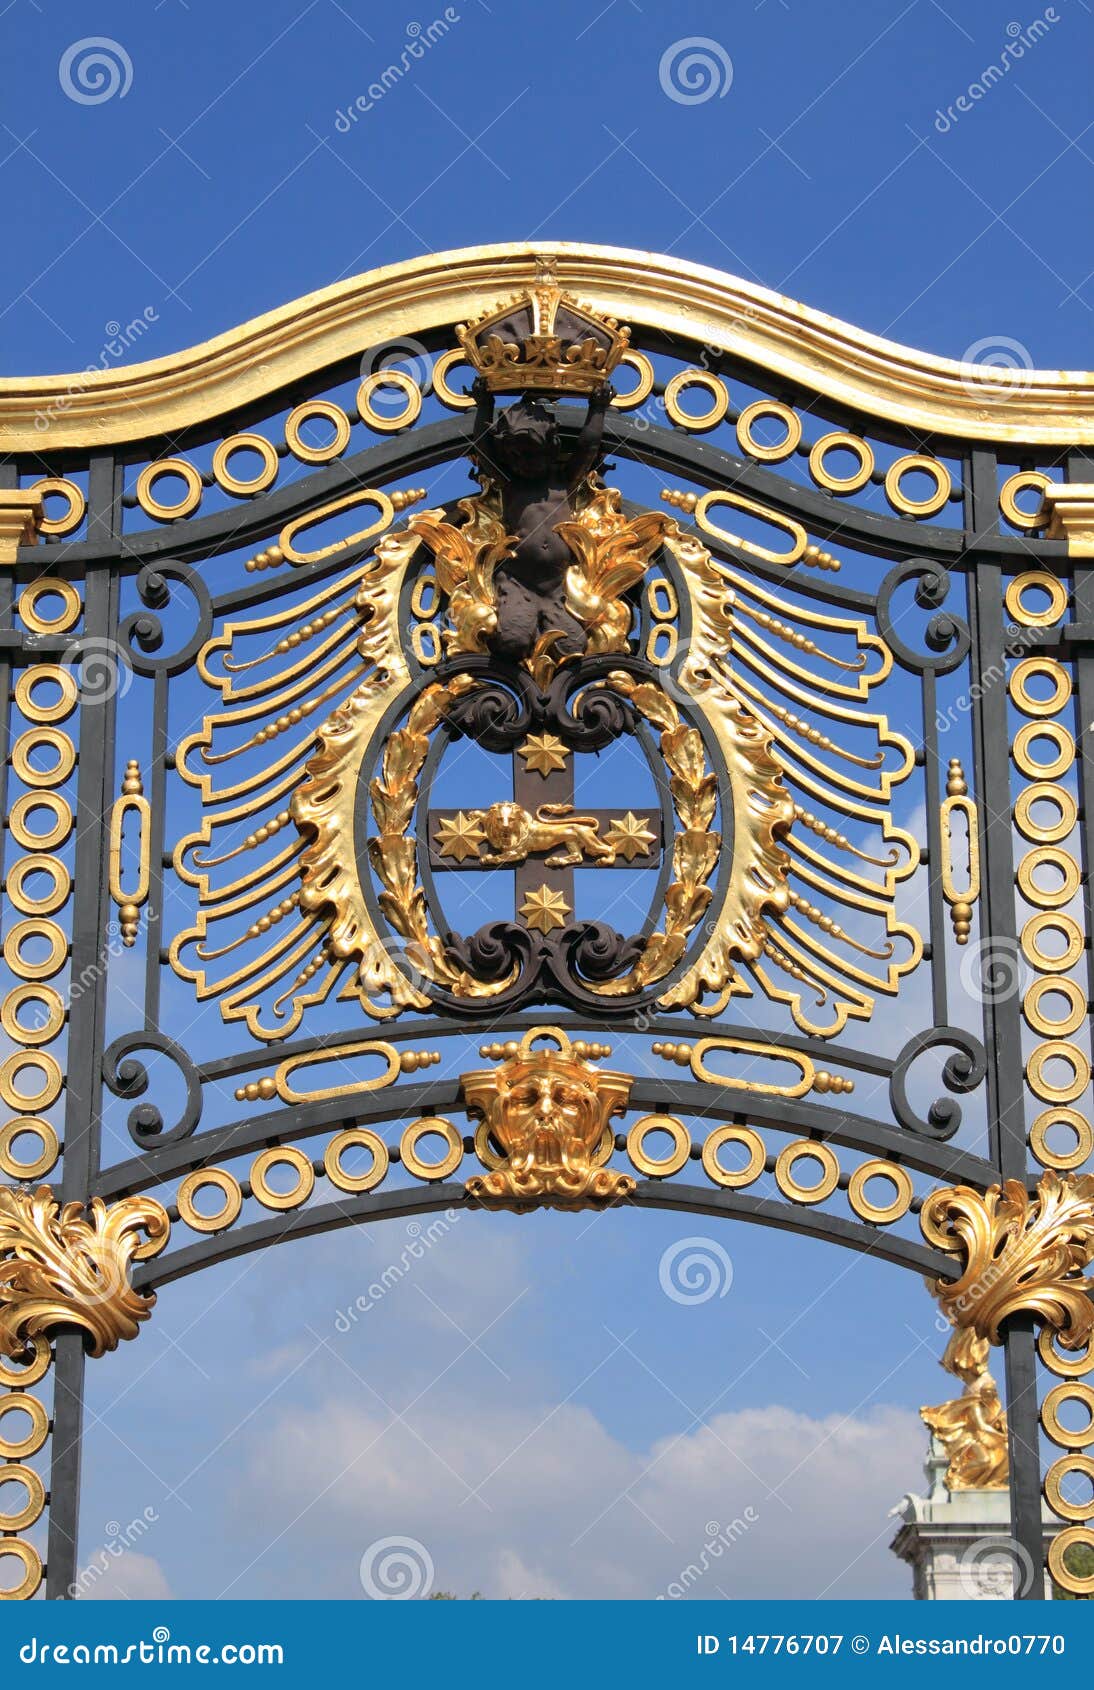 Emblem In Buckingham Palace Stock Image - Image of historical, britain